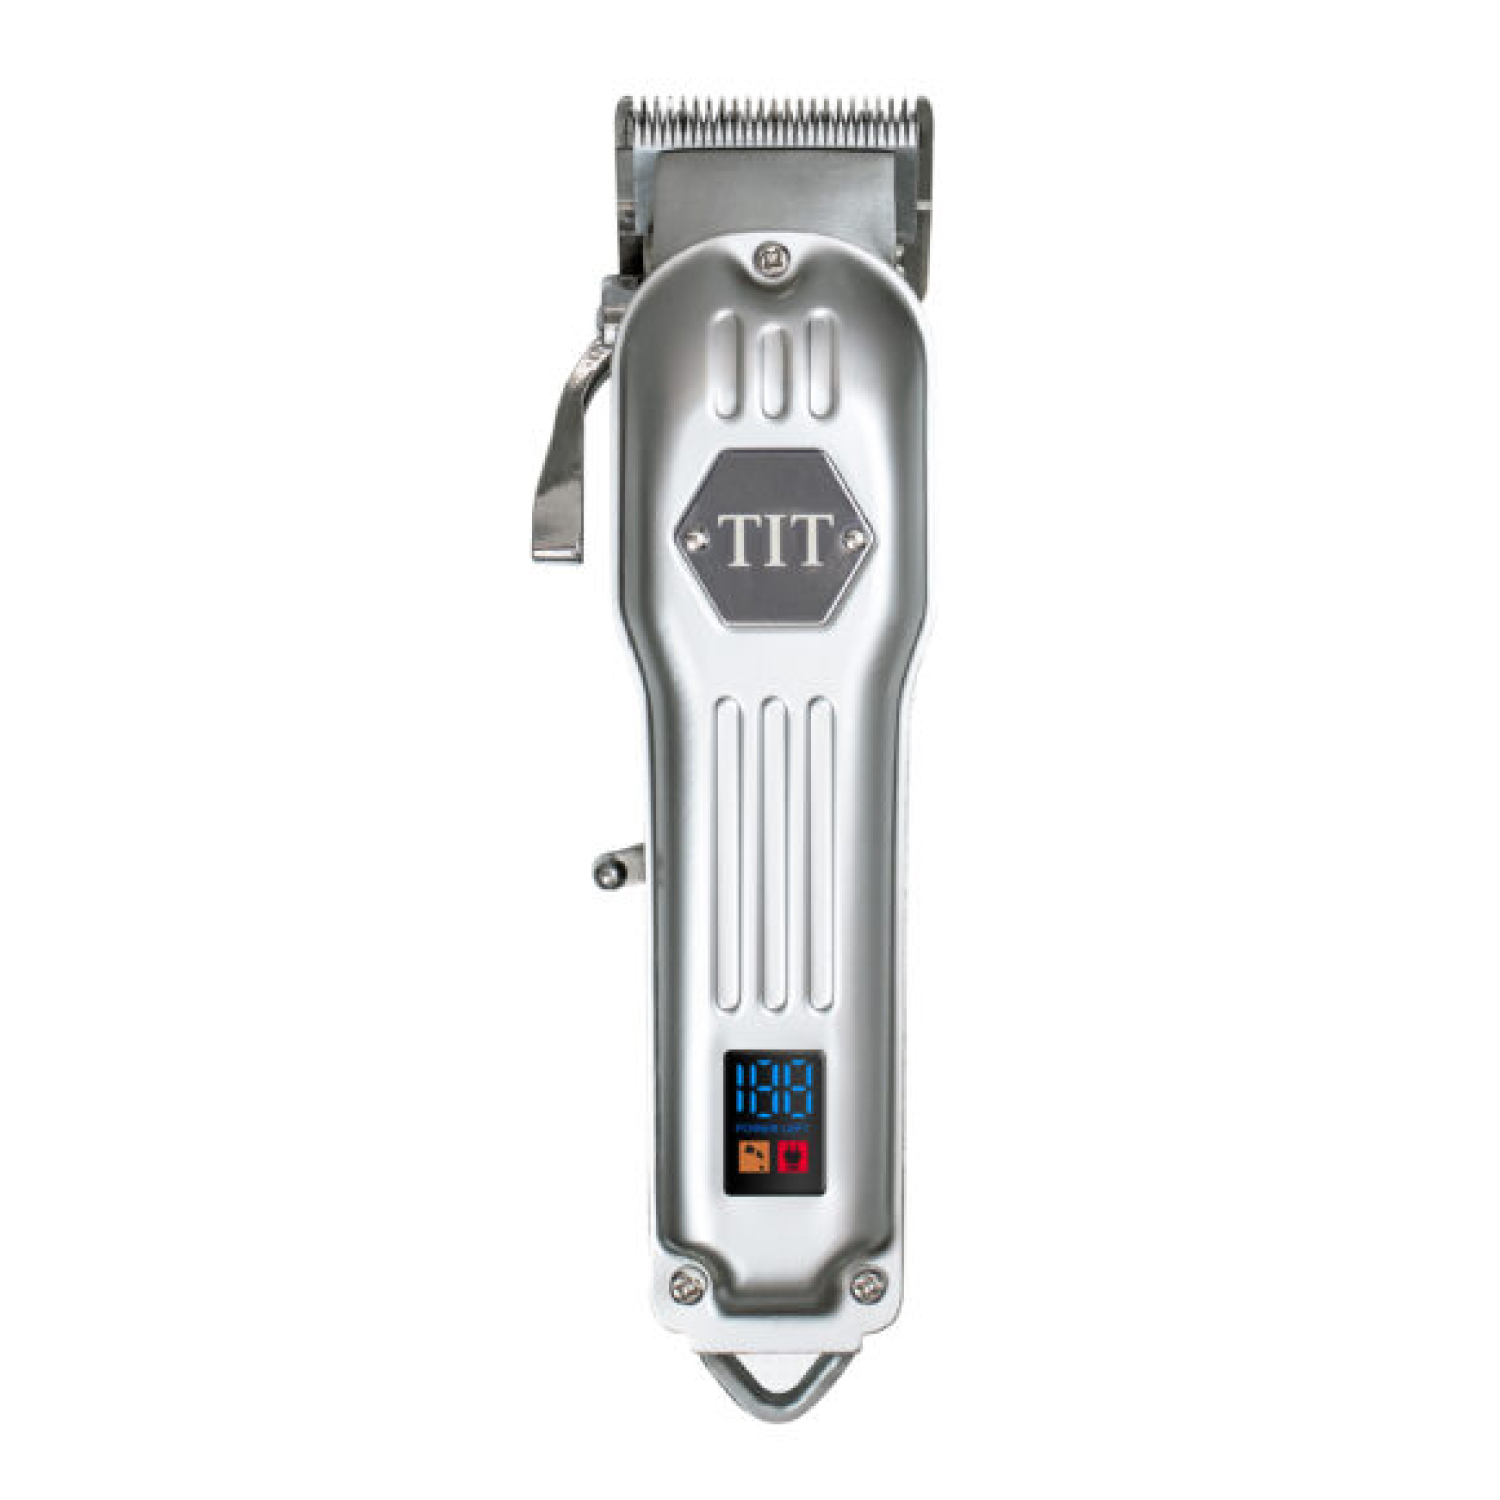 ماكينة قص الشعر الاحترافية تي اي تي السلكية واللاسلكية TF-618